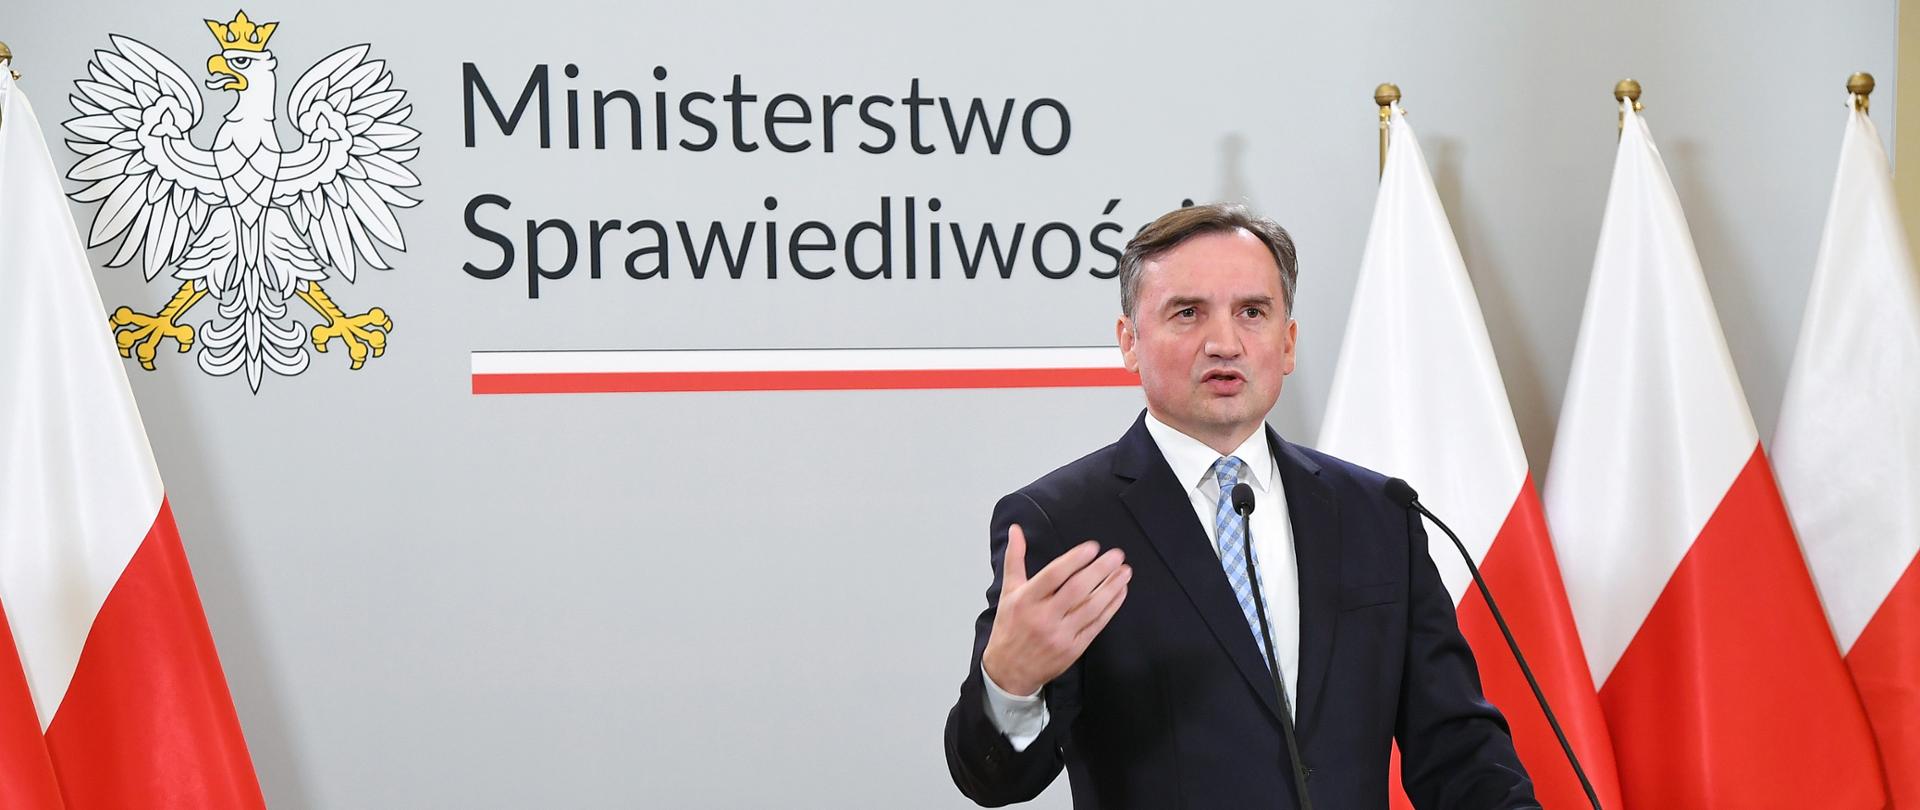 Minister Sprawiedliwości Prokurator Generalny Zbigniew Ziobro